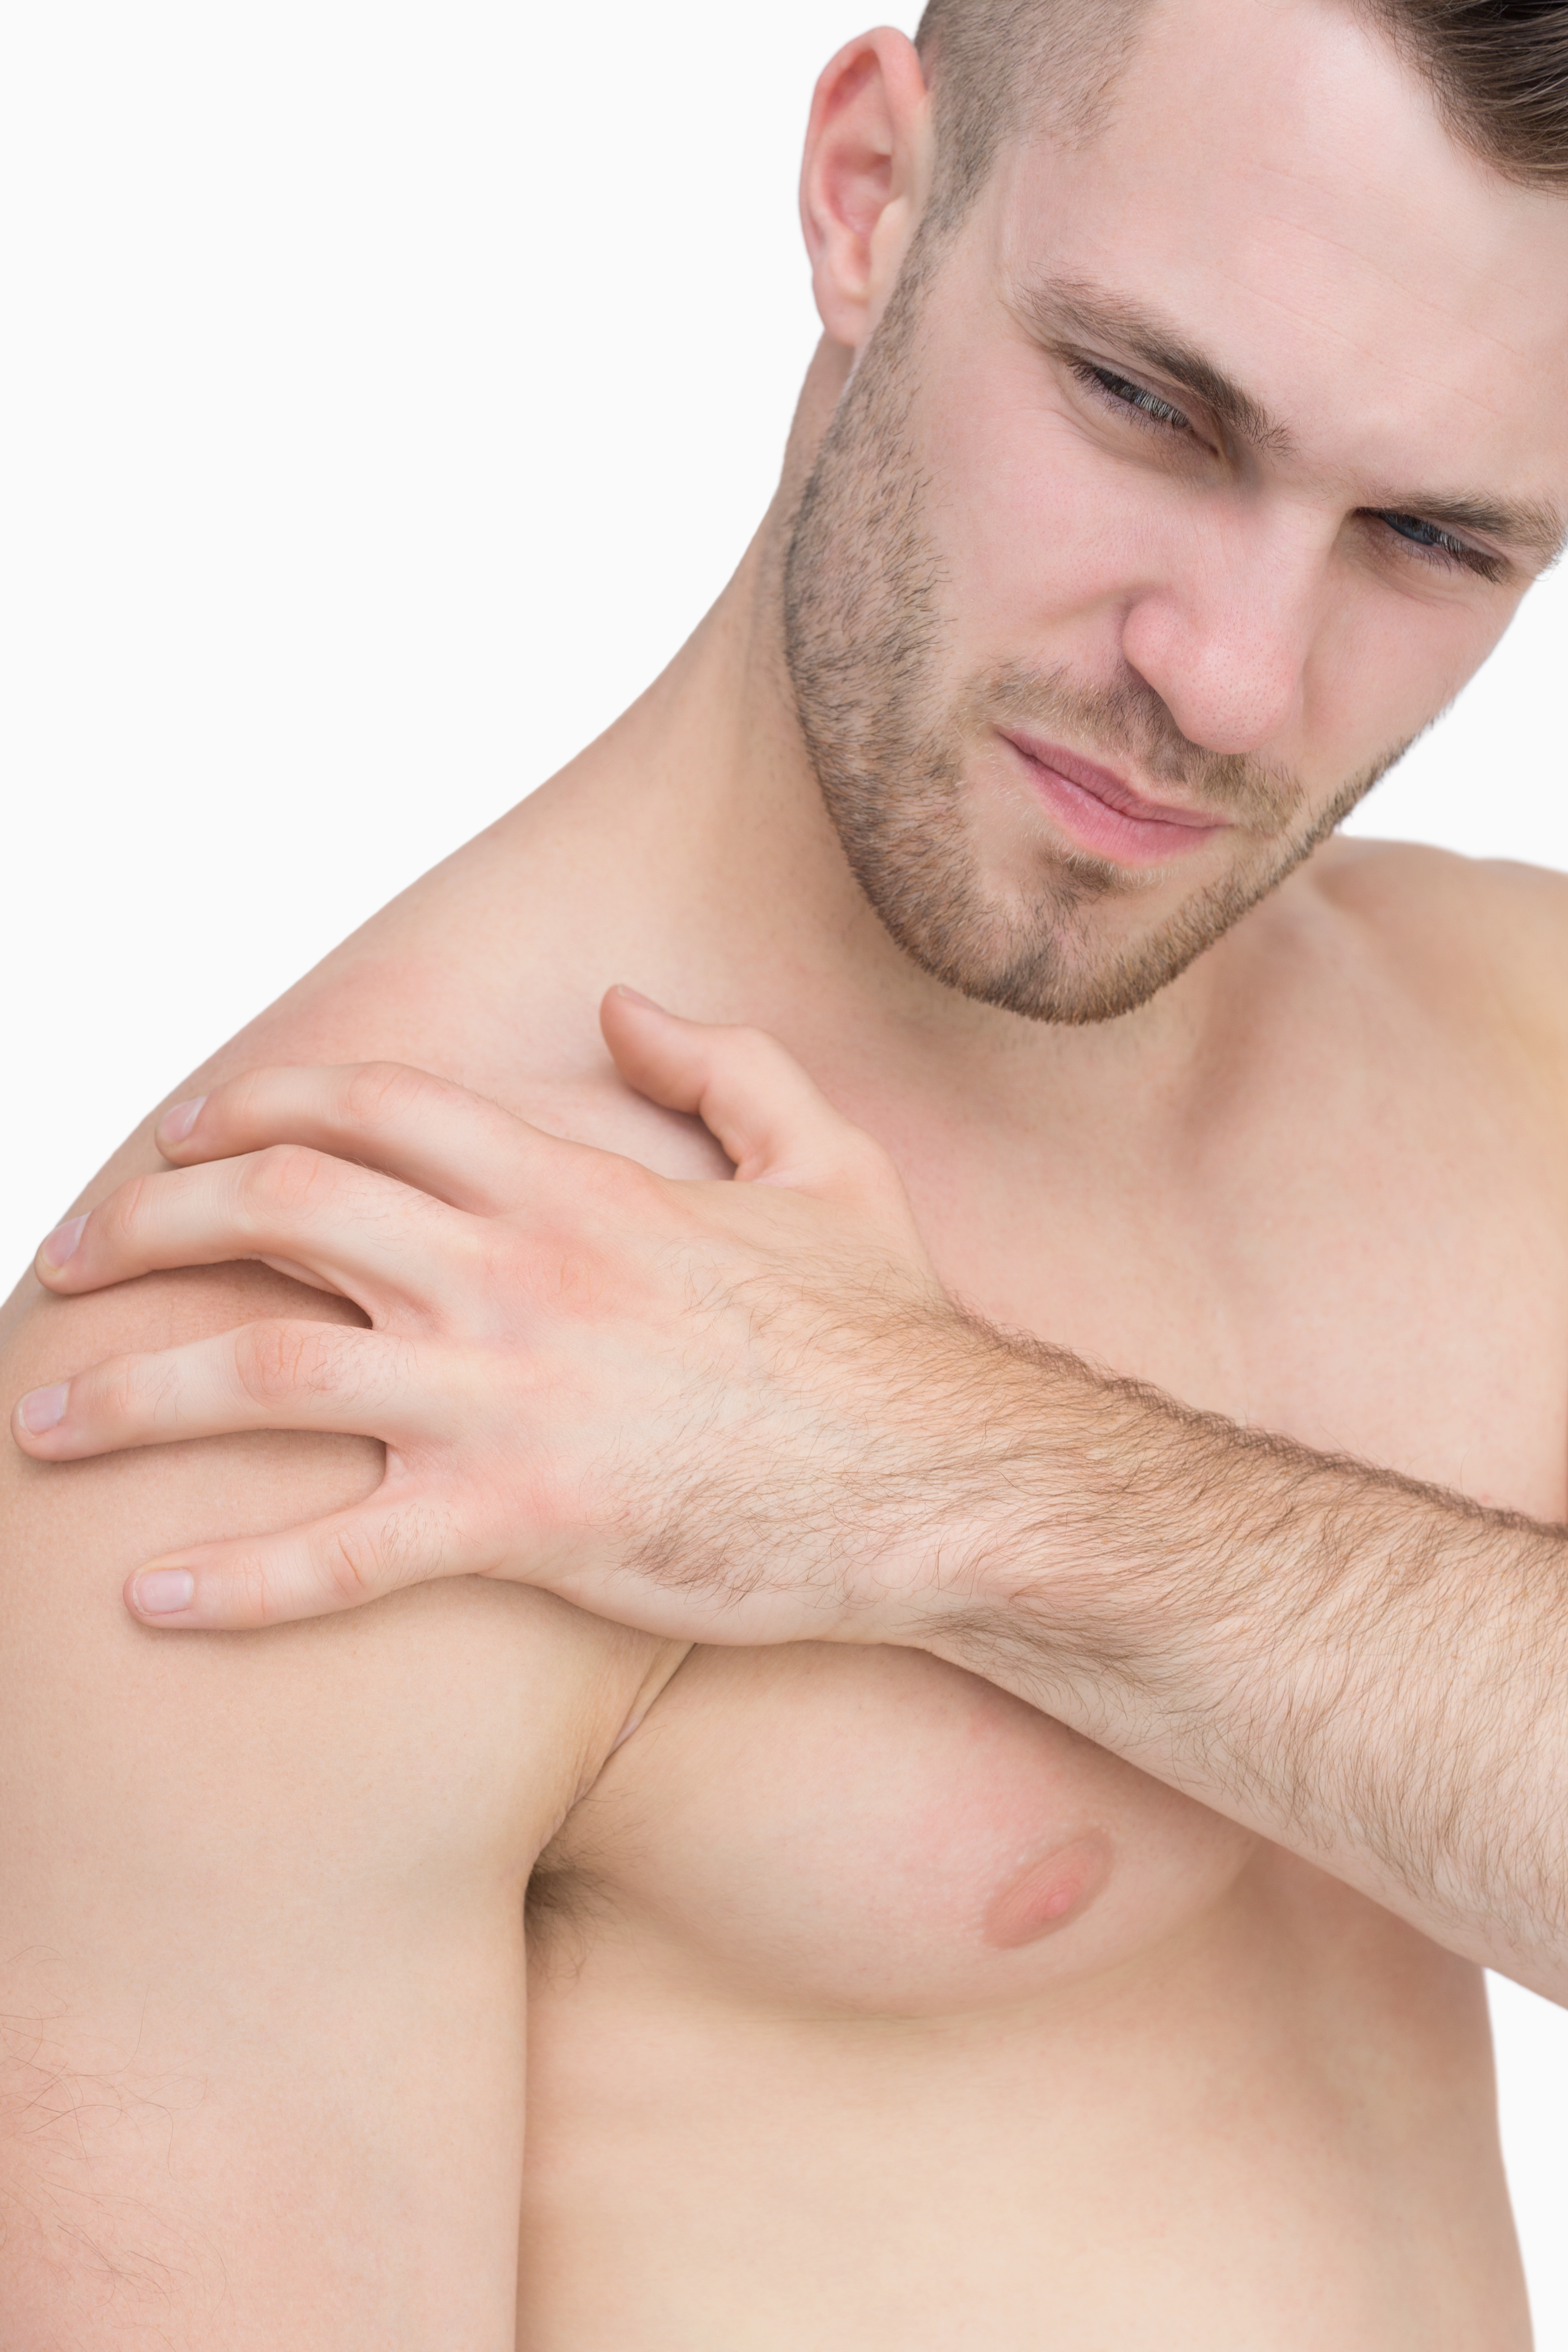 Frozen Shoulder Symptoms vs. Arthritis, Plus Treatment